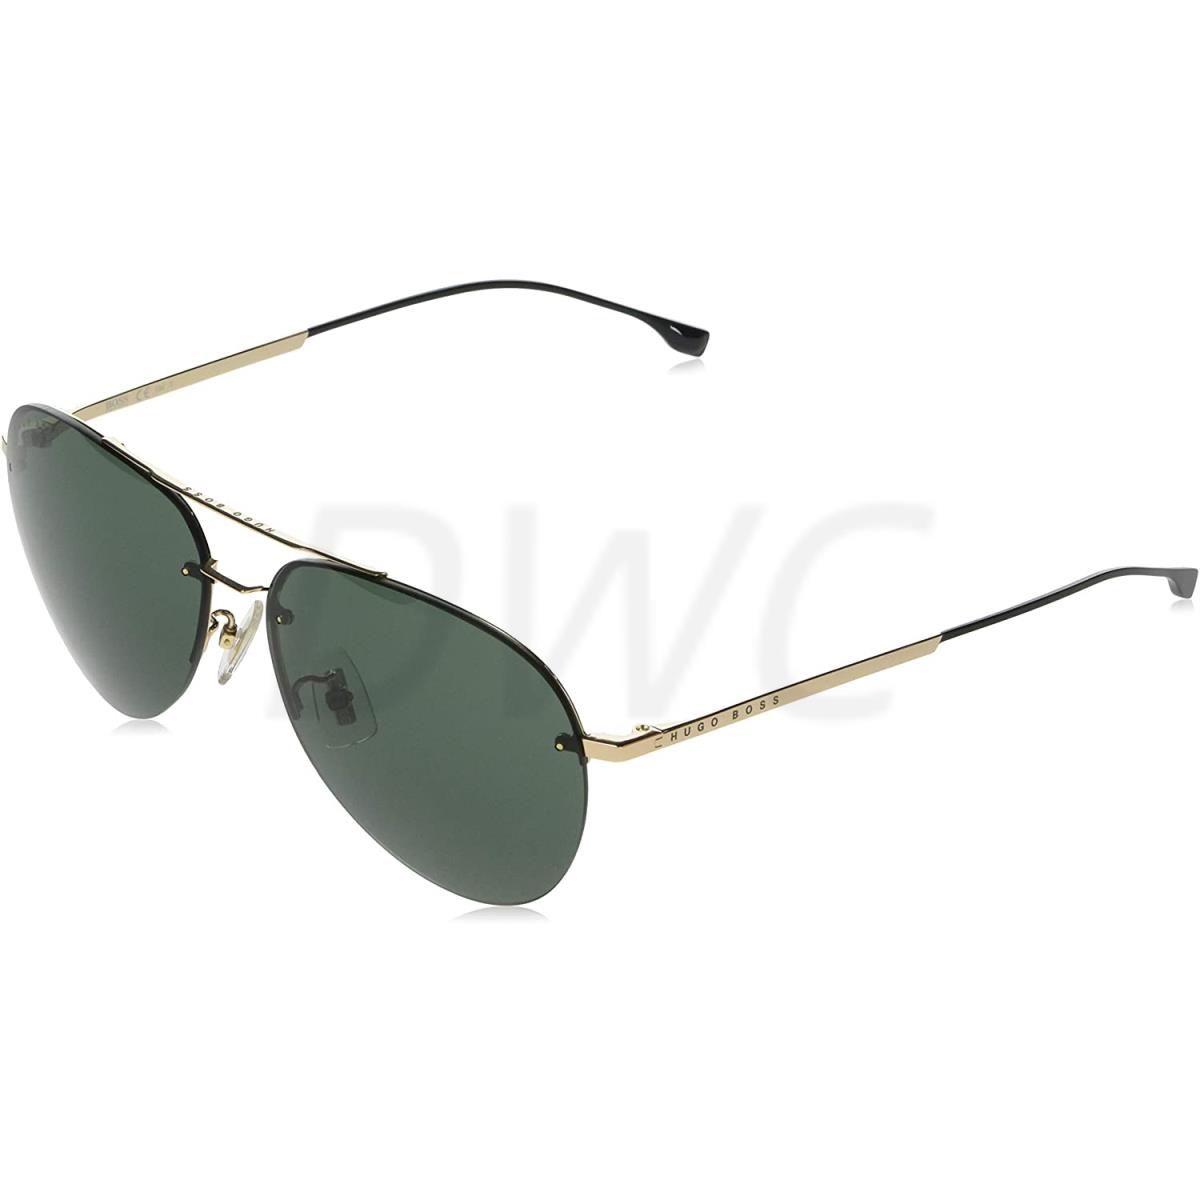 Hugo Boss HB 1066/F/S 201812-000/QT-62 Green Lens Sunglasses - Frame: Gold, Lens: Green